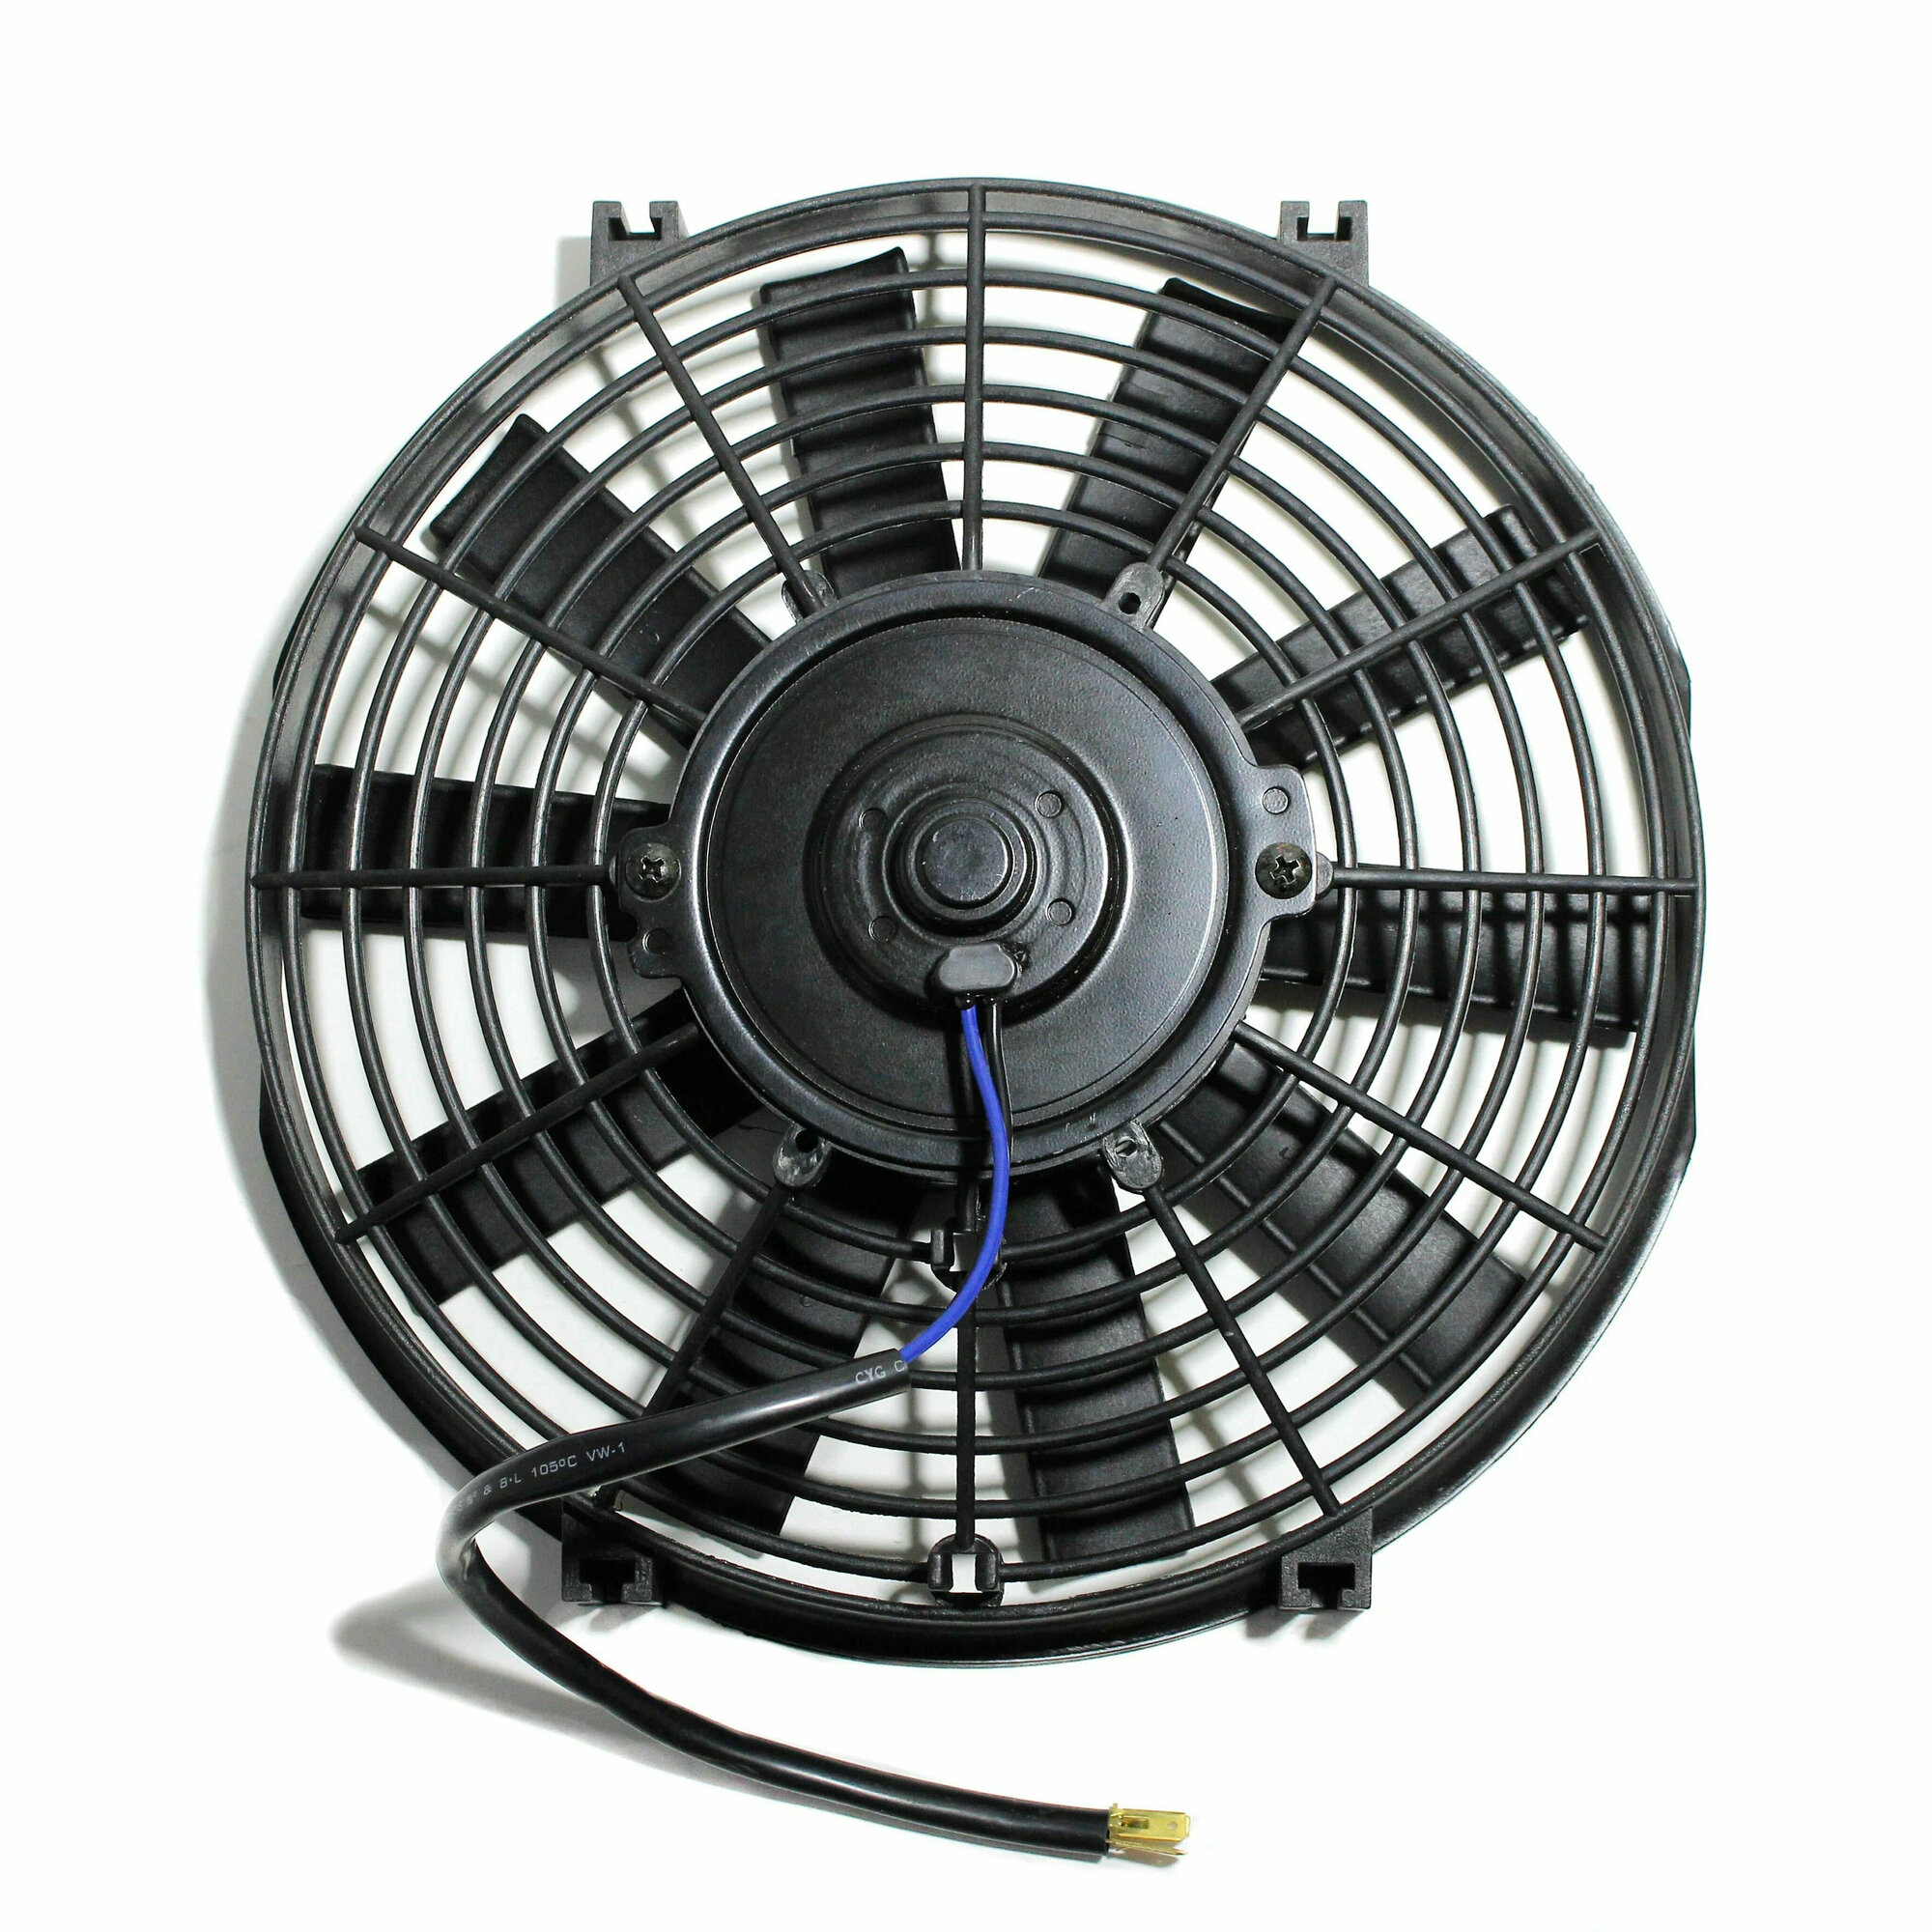 Вентилятор электрический 10 дюймов 80W — купить в интернет-магазине по низкой цене на Яндекс Маркете